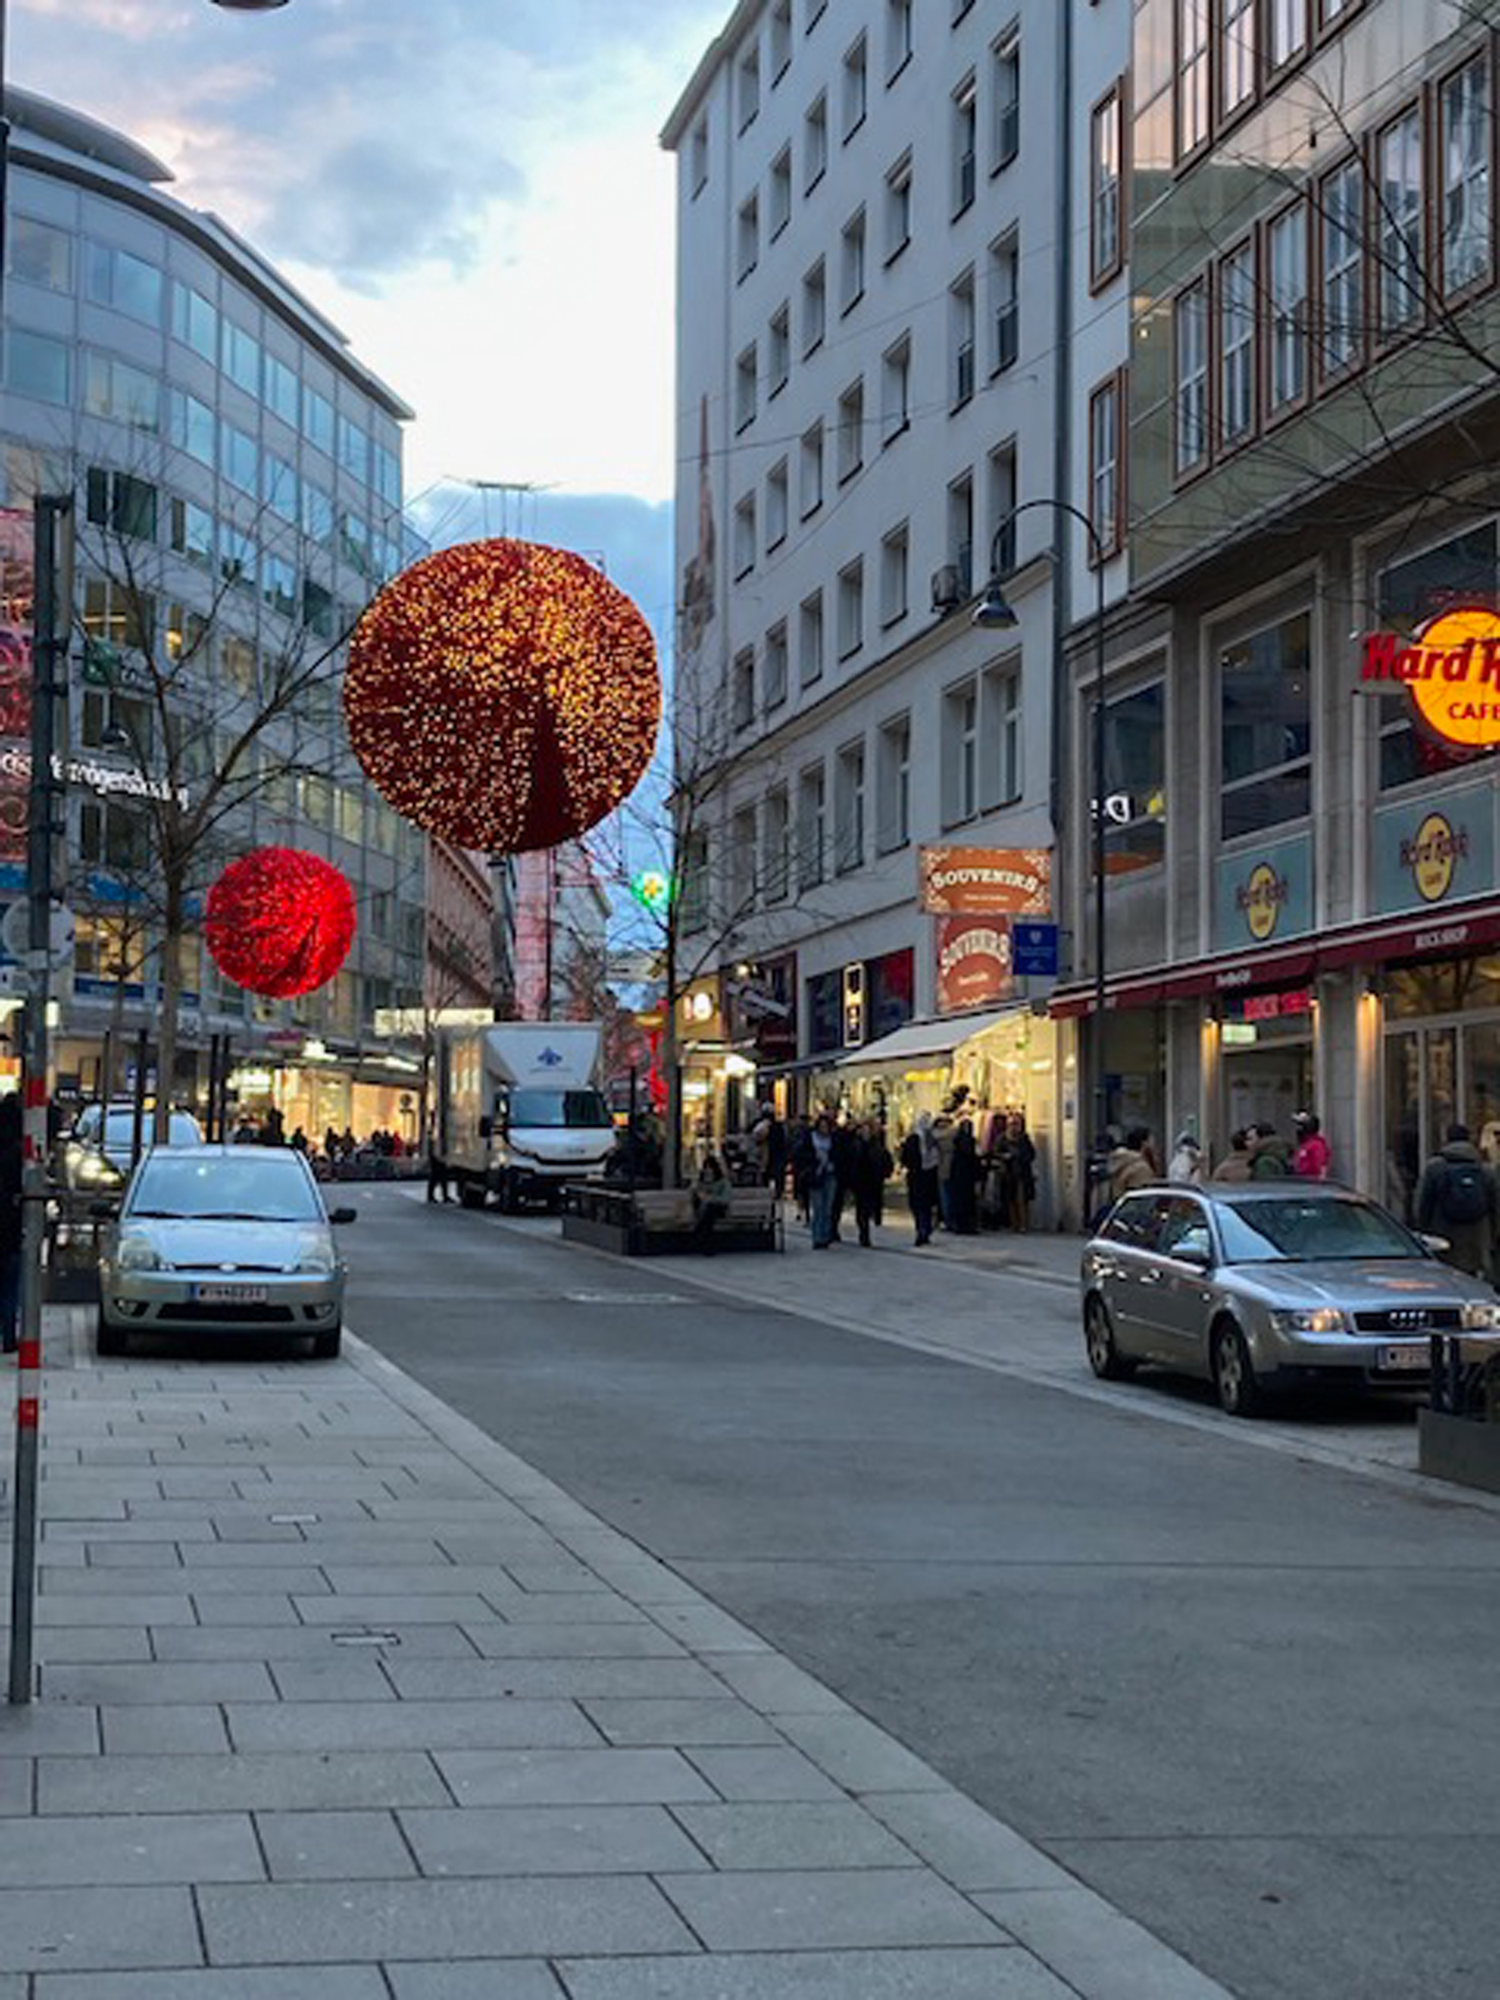 Grandioza izmēra sarkanas un mirguļojošas bumbas ved no paša Vīnes centra dziļāk iekšā pilsētas Ziemassvētku gaidīšanas noskaņās.